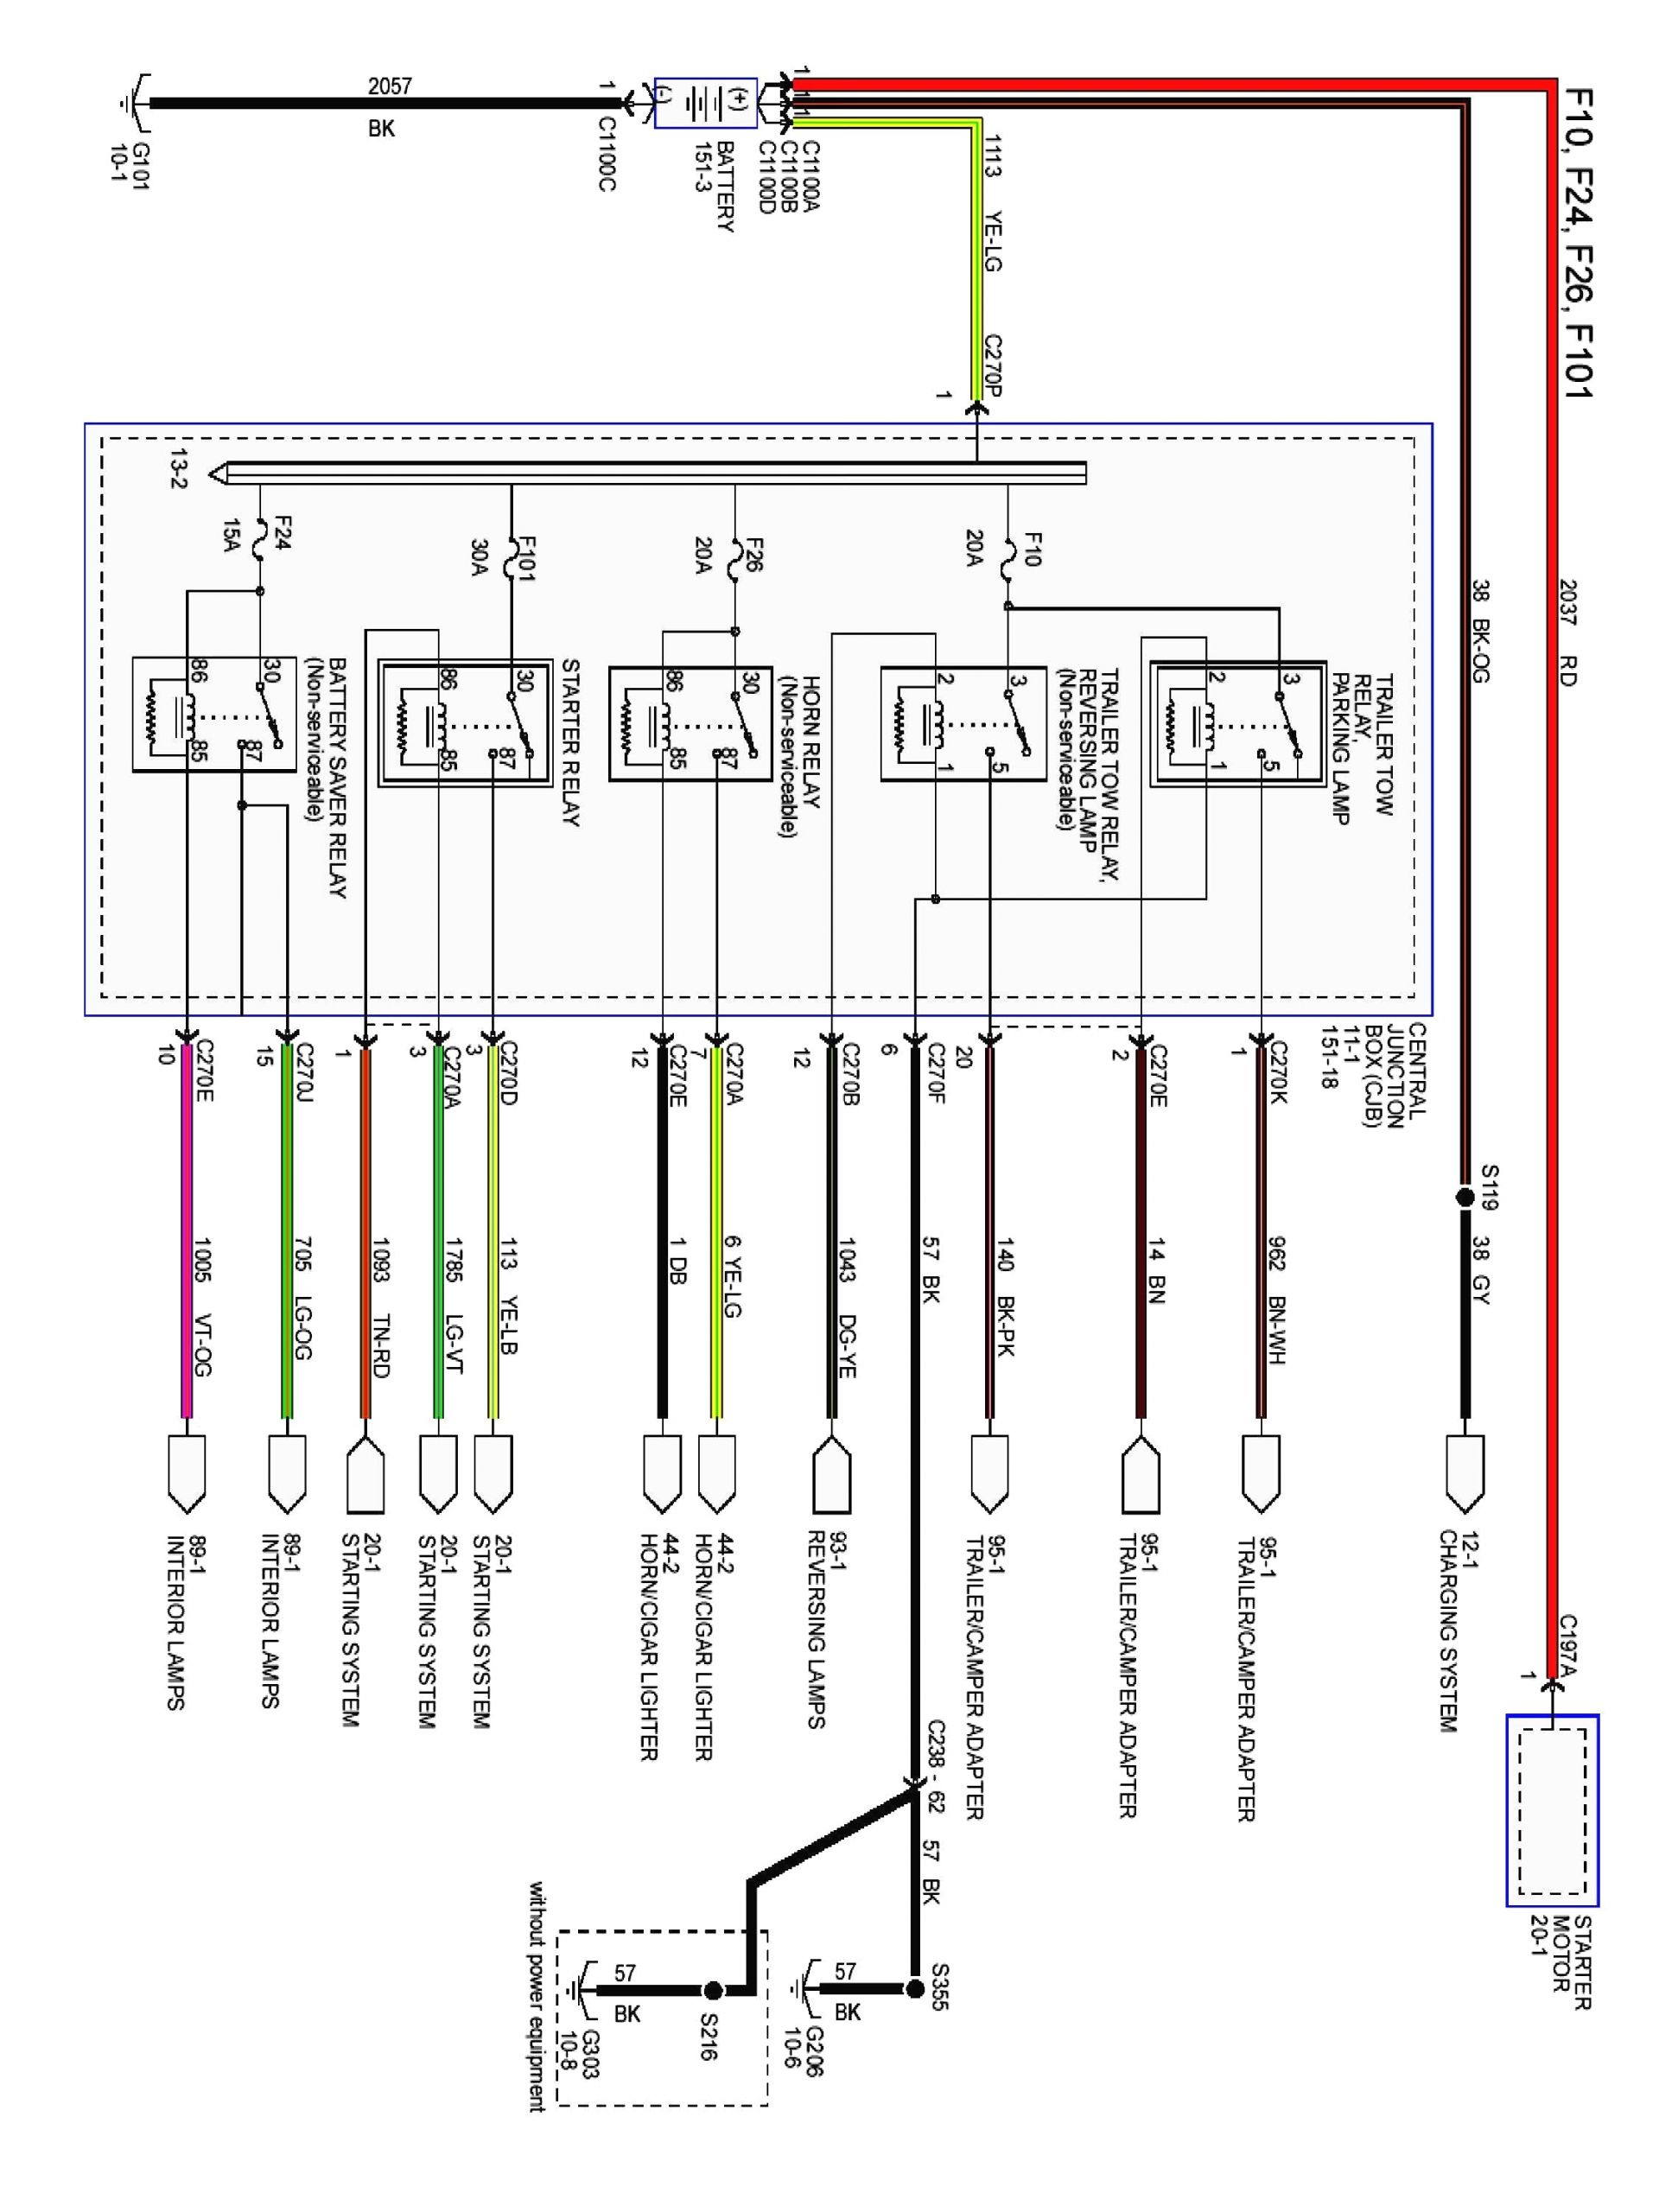 ford radio wiring diagram 2005 ford f 150 wiring diagram wiring diagram of ford radio wiring diagram jpg